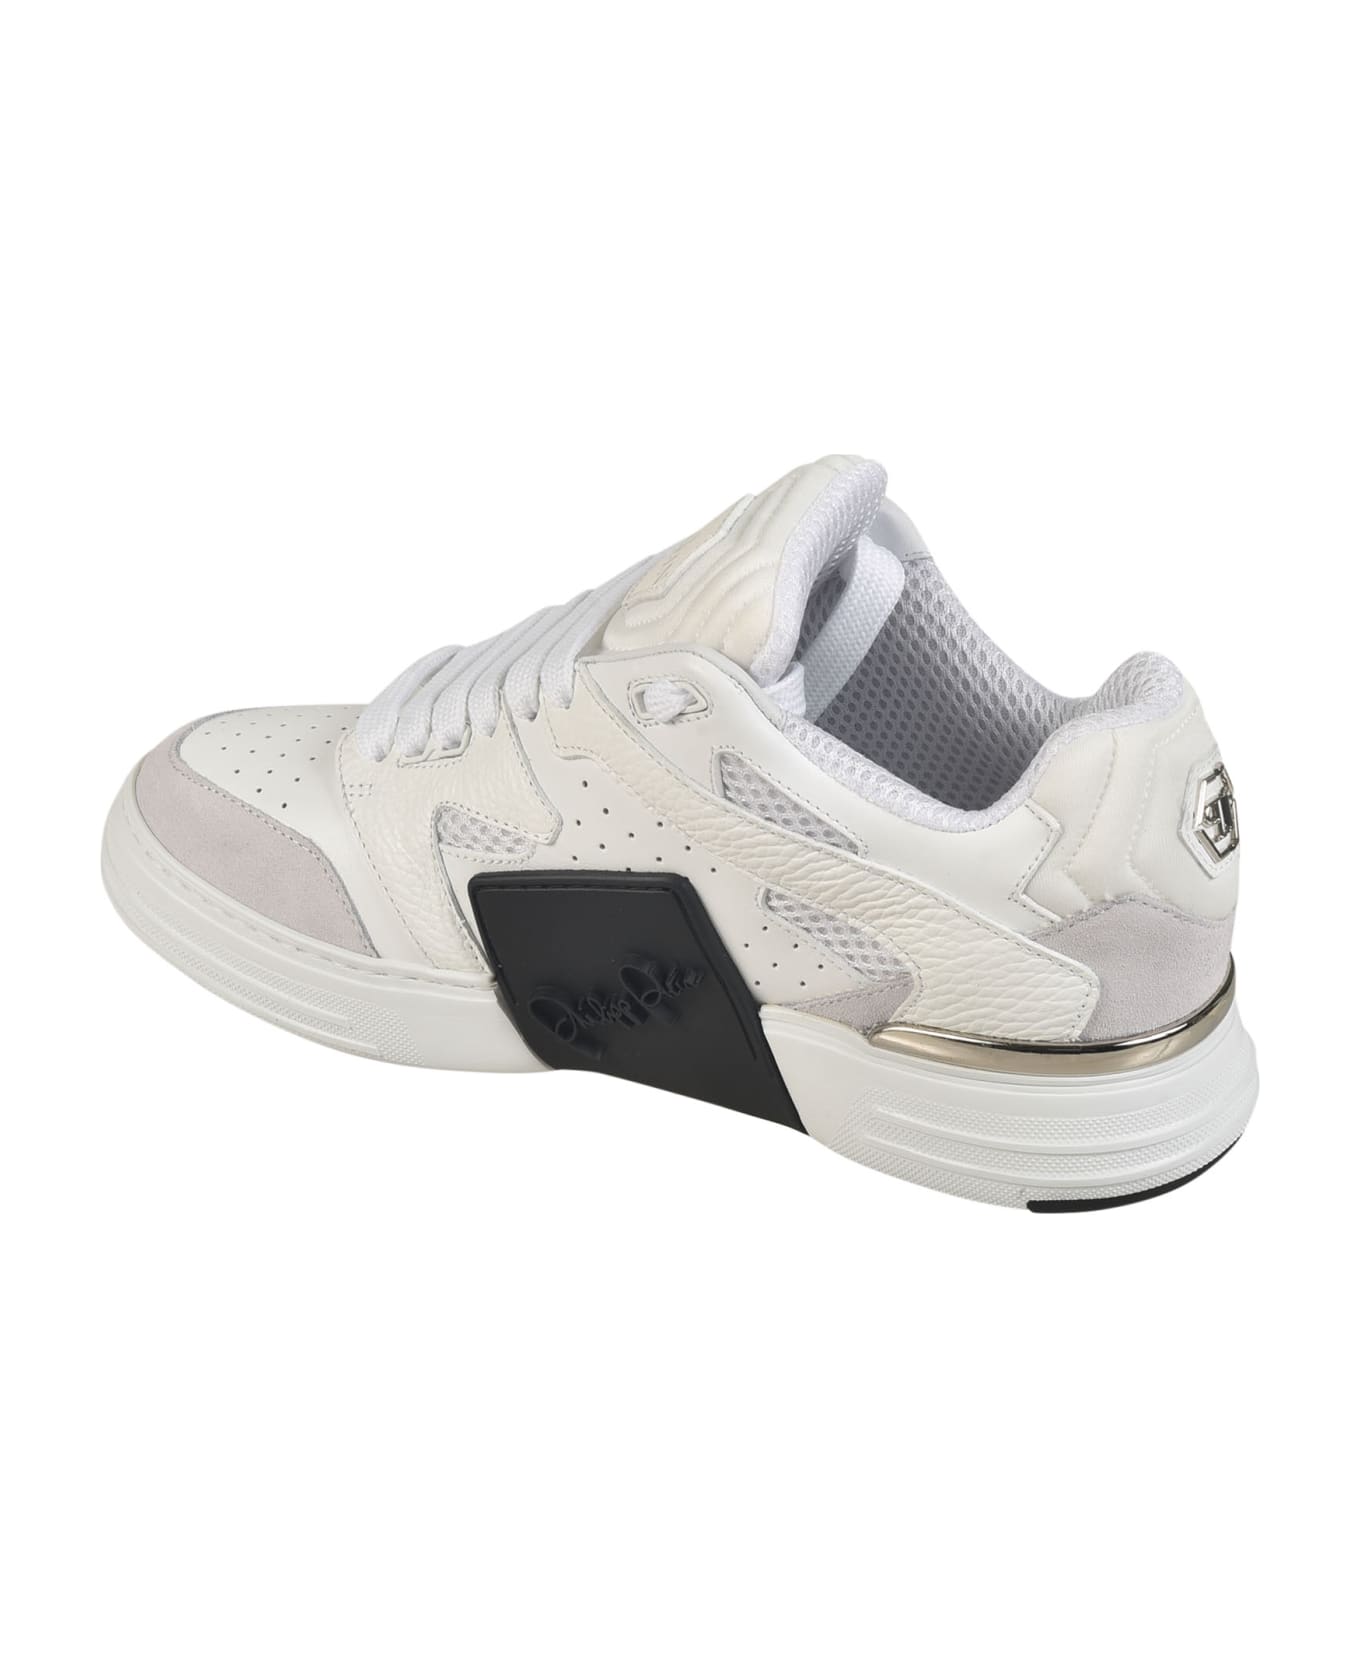 Philipp Plein Mix Leather Sneakers - White